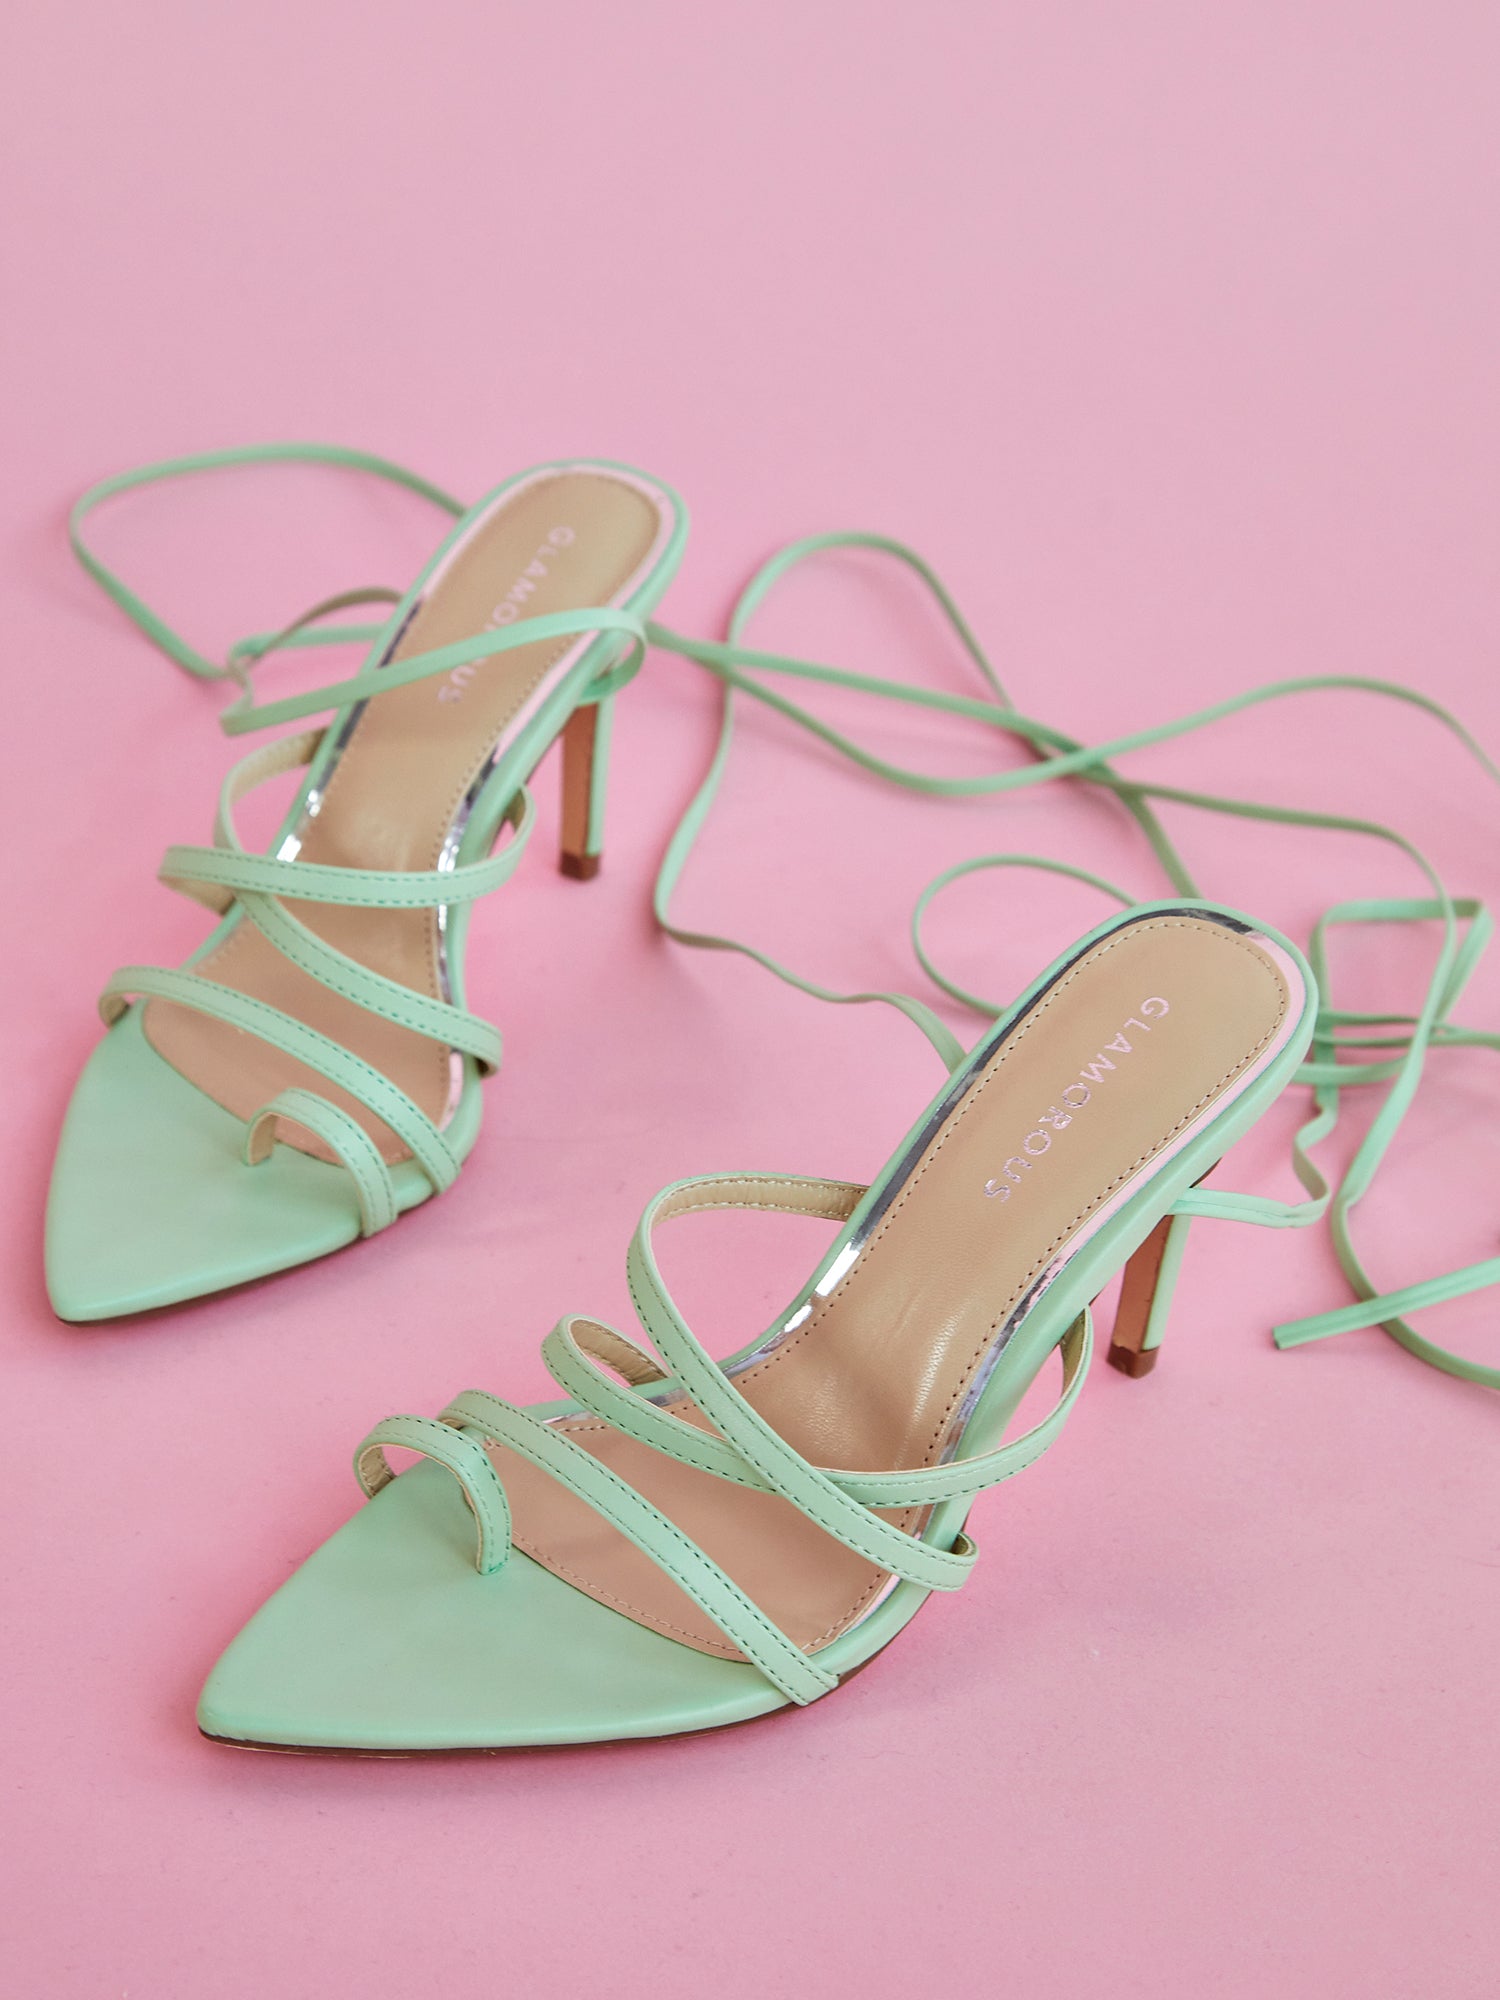 Tie Leg Design Stiletto Heeled Strappy Sandals | Tacchi verde, Scarpe  verdi, Scarpe col tacco